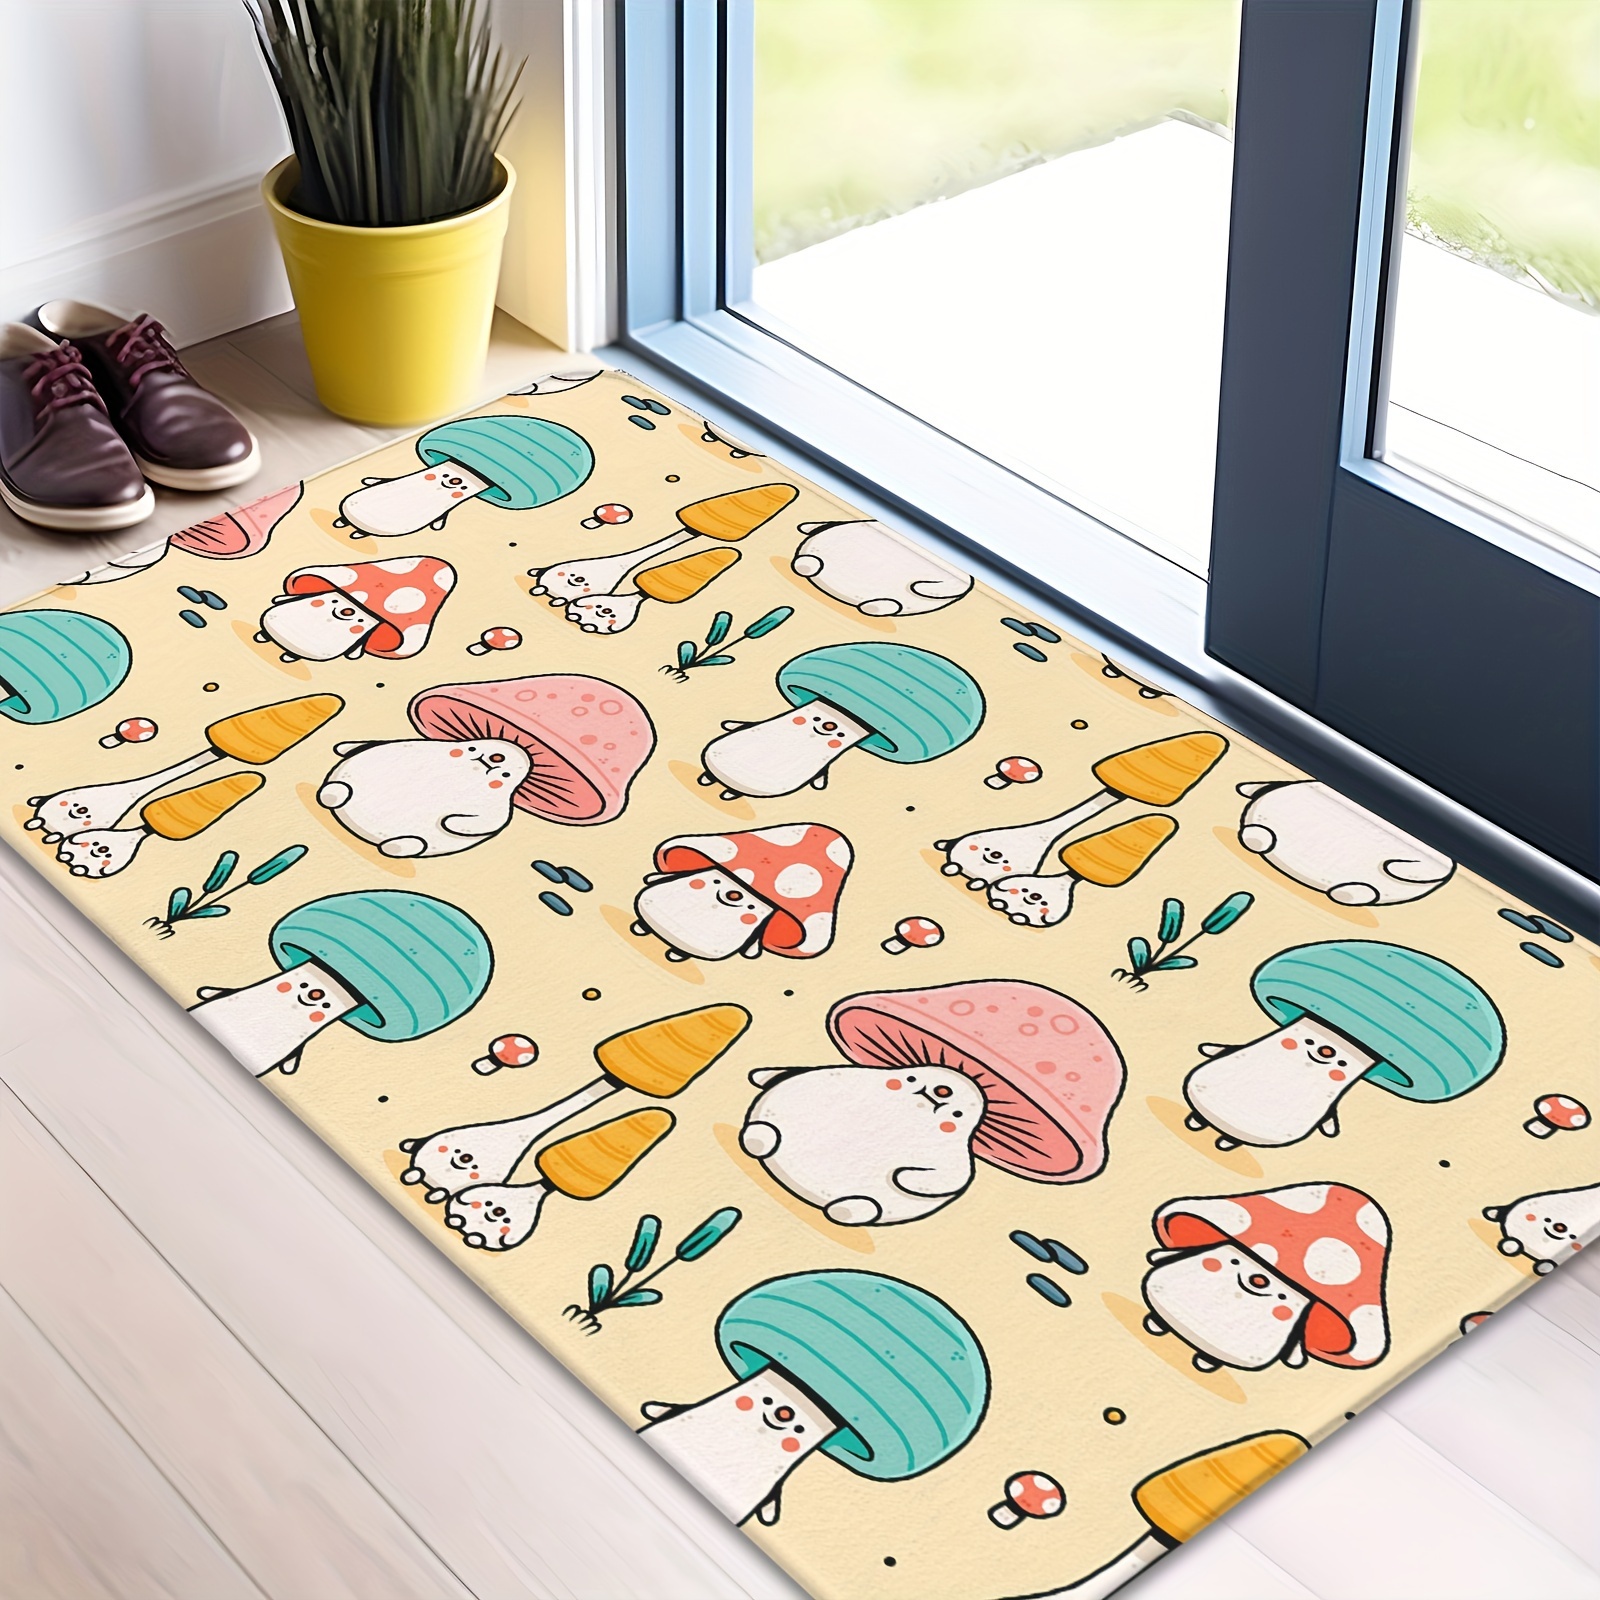 Mushroom Doormats, Indoor Outdoor Non Slip Durable Washable Floor